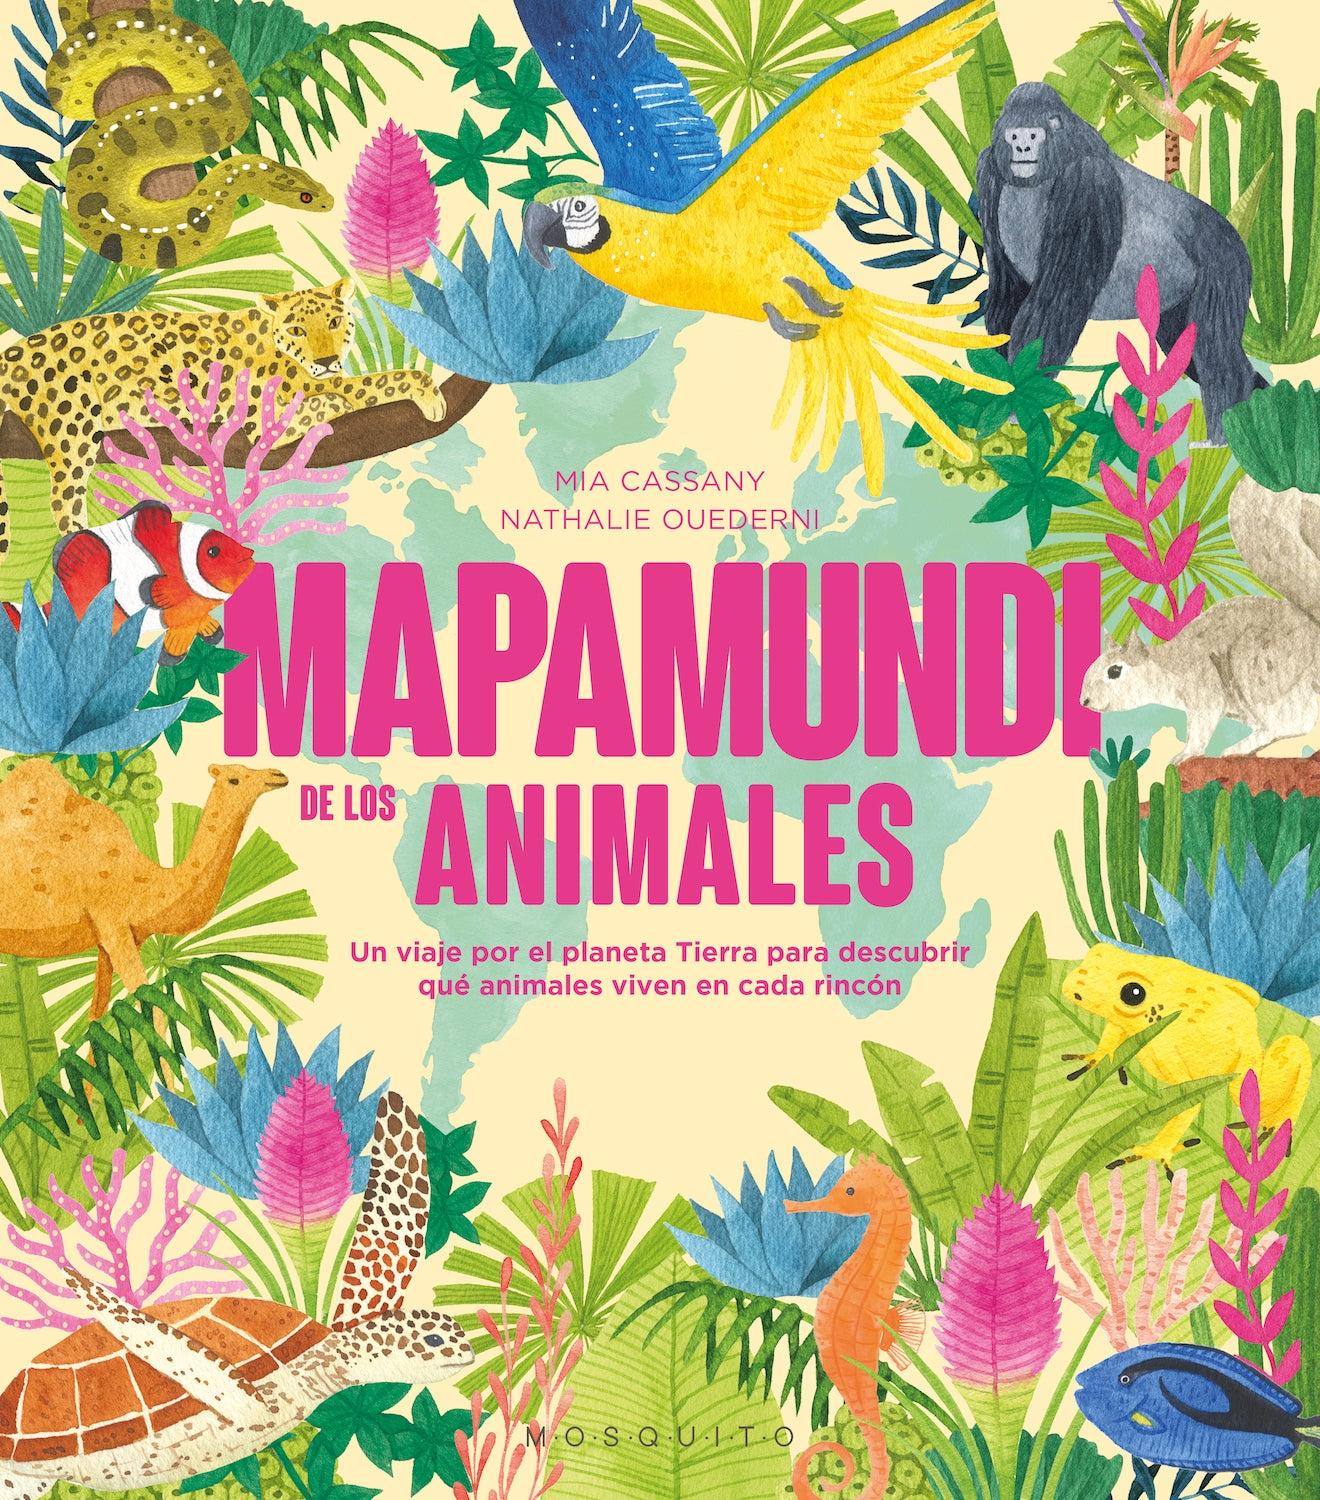 Mapamundi de los Animales "Un Viaje por el Planeta Tierra para Descubrir que Animales Viven en Cada". 